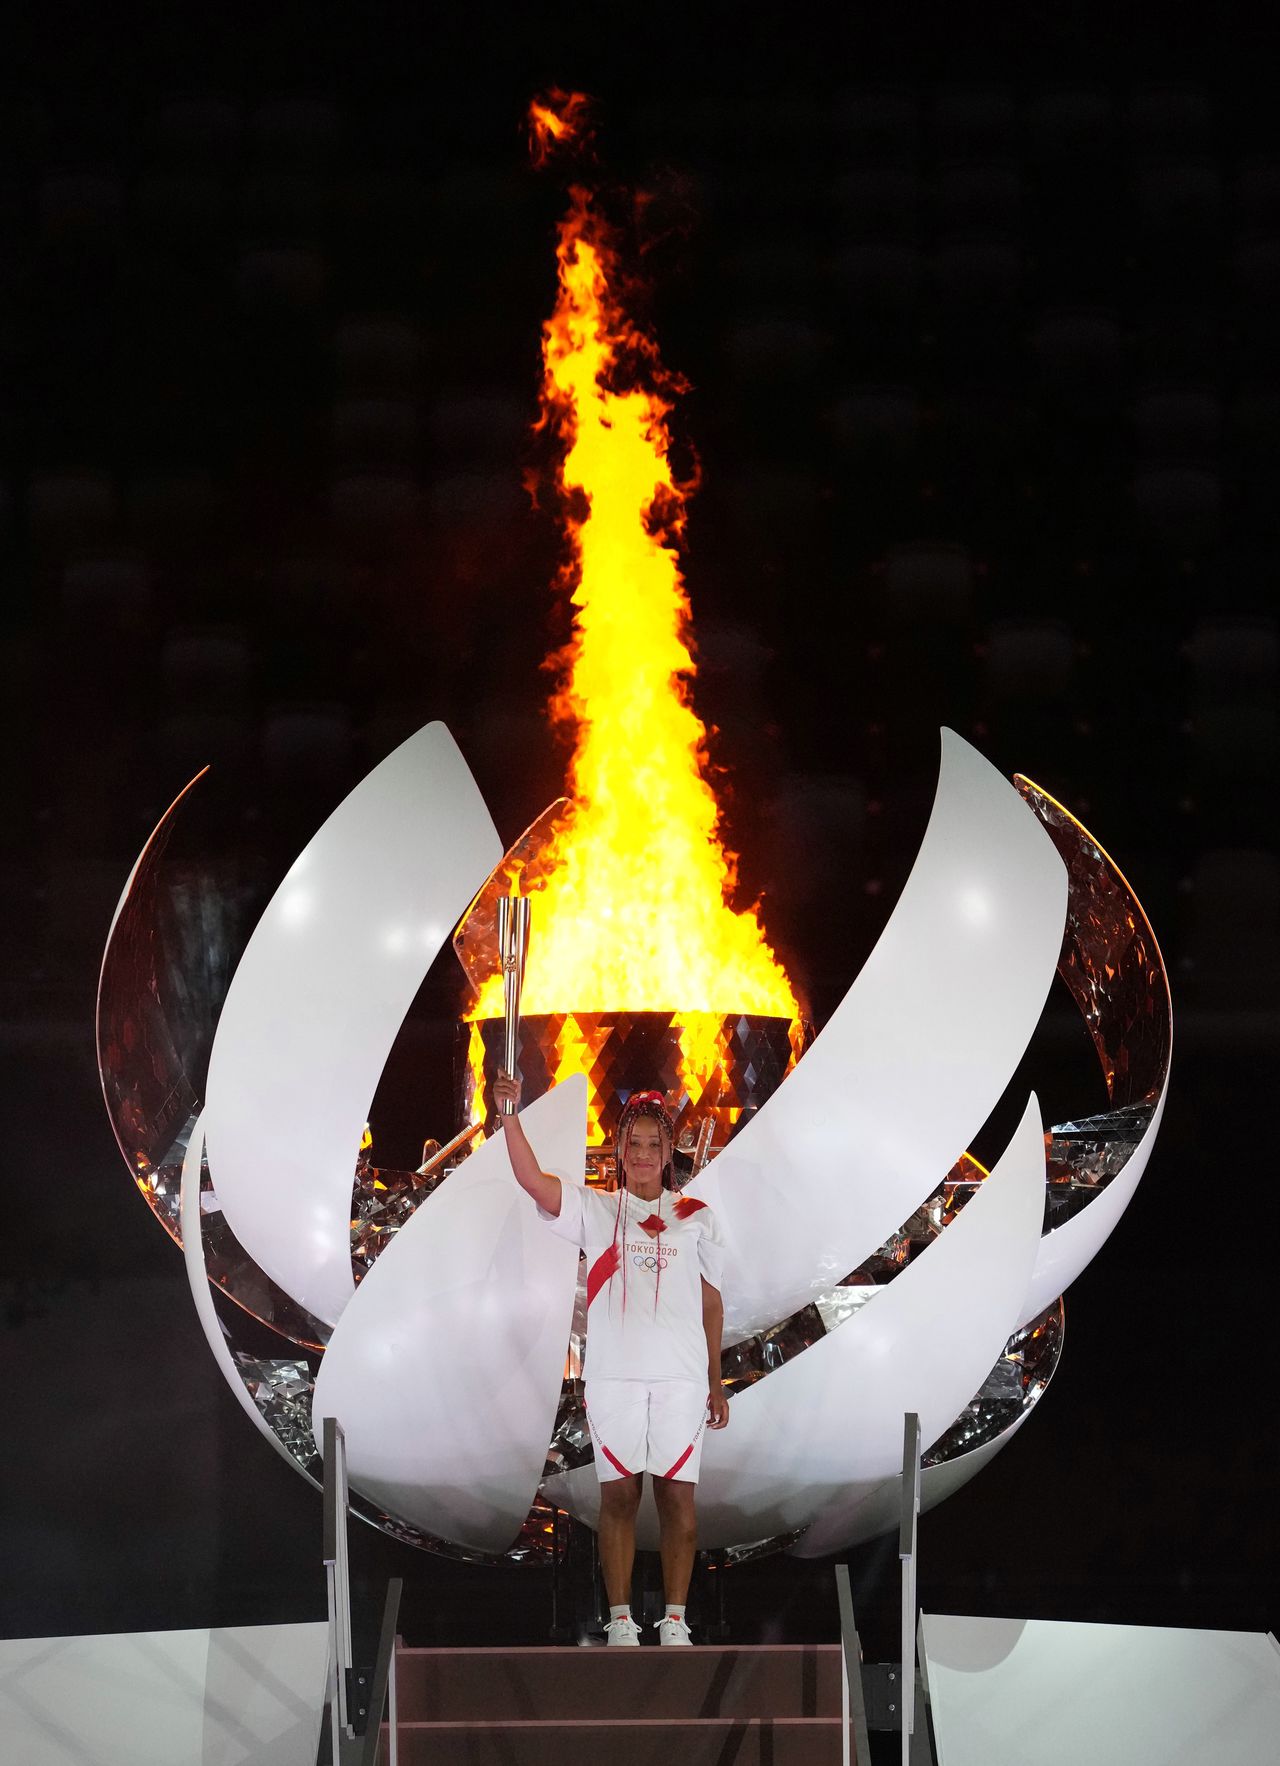 Профессиональная теннисистка Осака Наоми, пронесшая олимпийский факел на последнем этапе эстафеты и зажегшая Олимпийское пламя на церемонии открытия Игр в Токио, 23 июля 2021 г., Токио, Национальный стадион, официальная съемка (© Jiji Press)